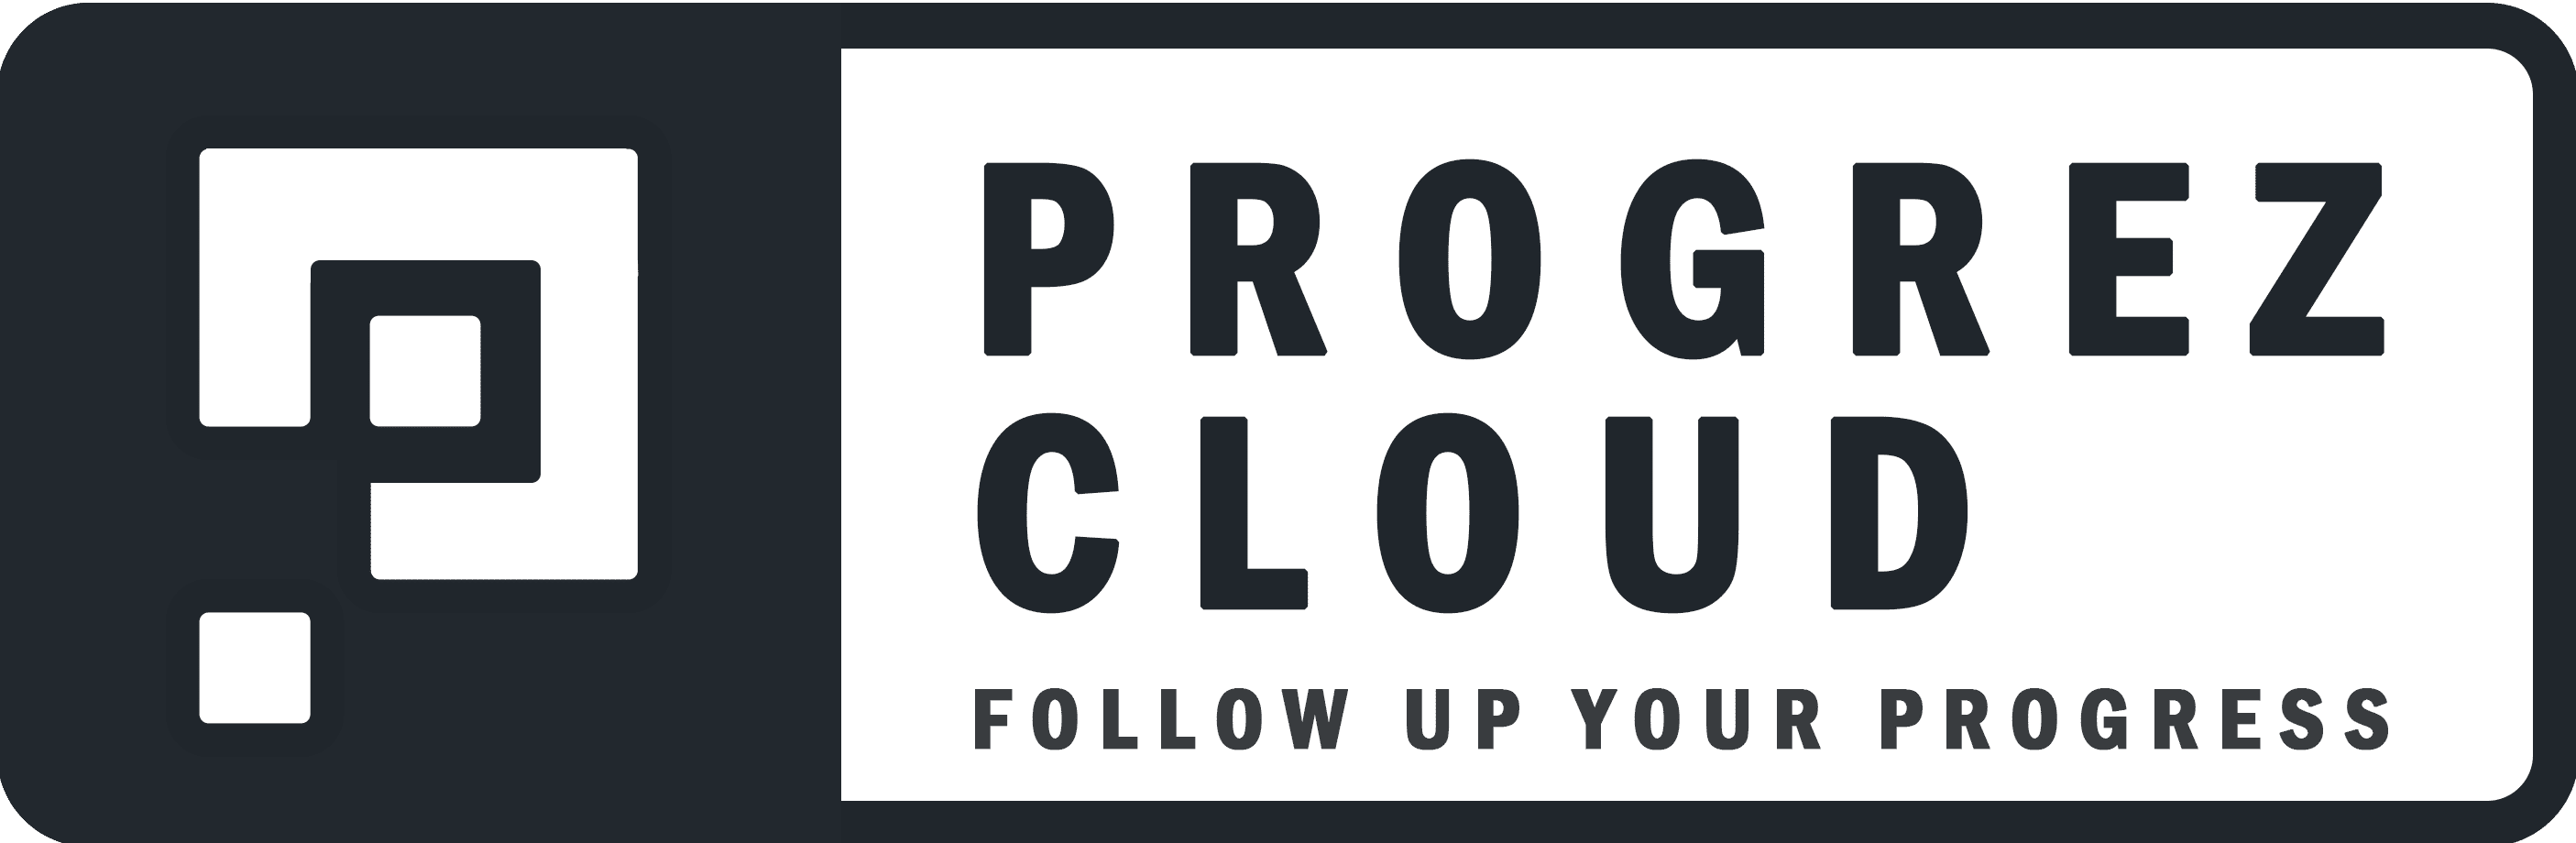 Progrez Cloud Images